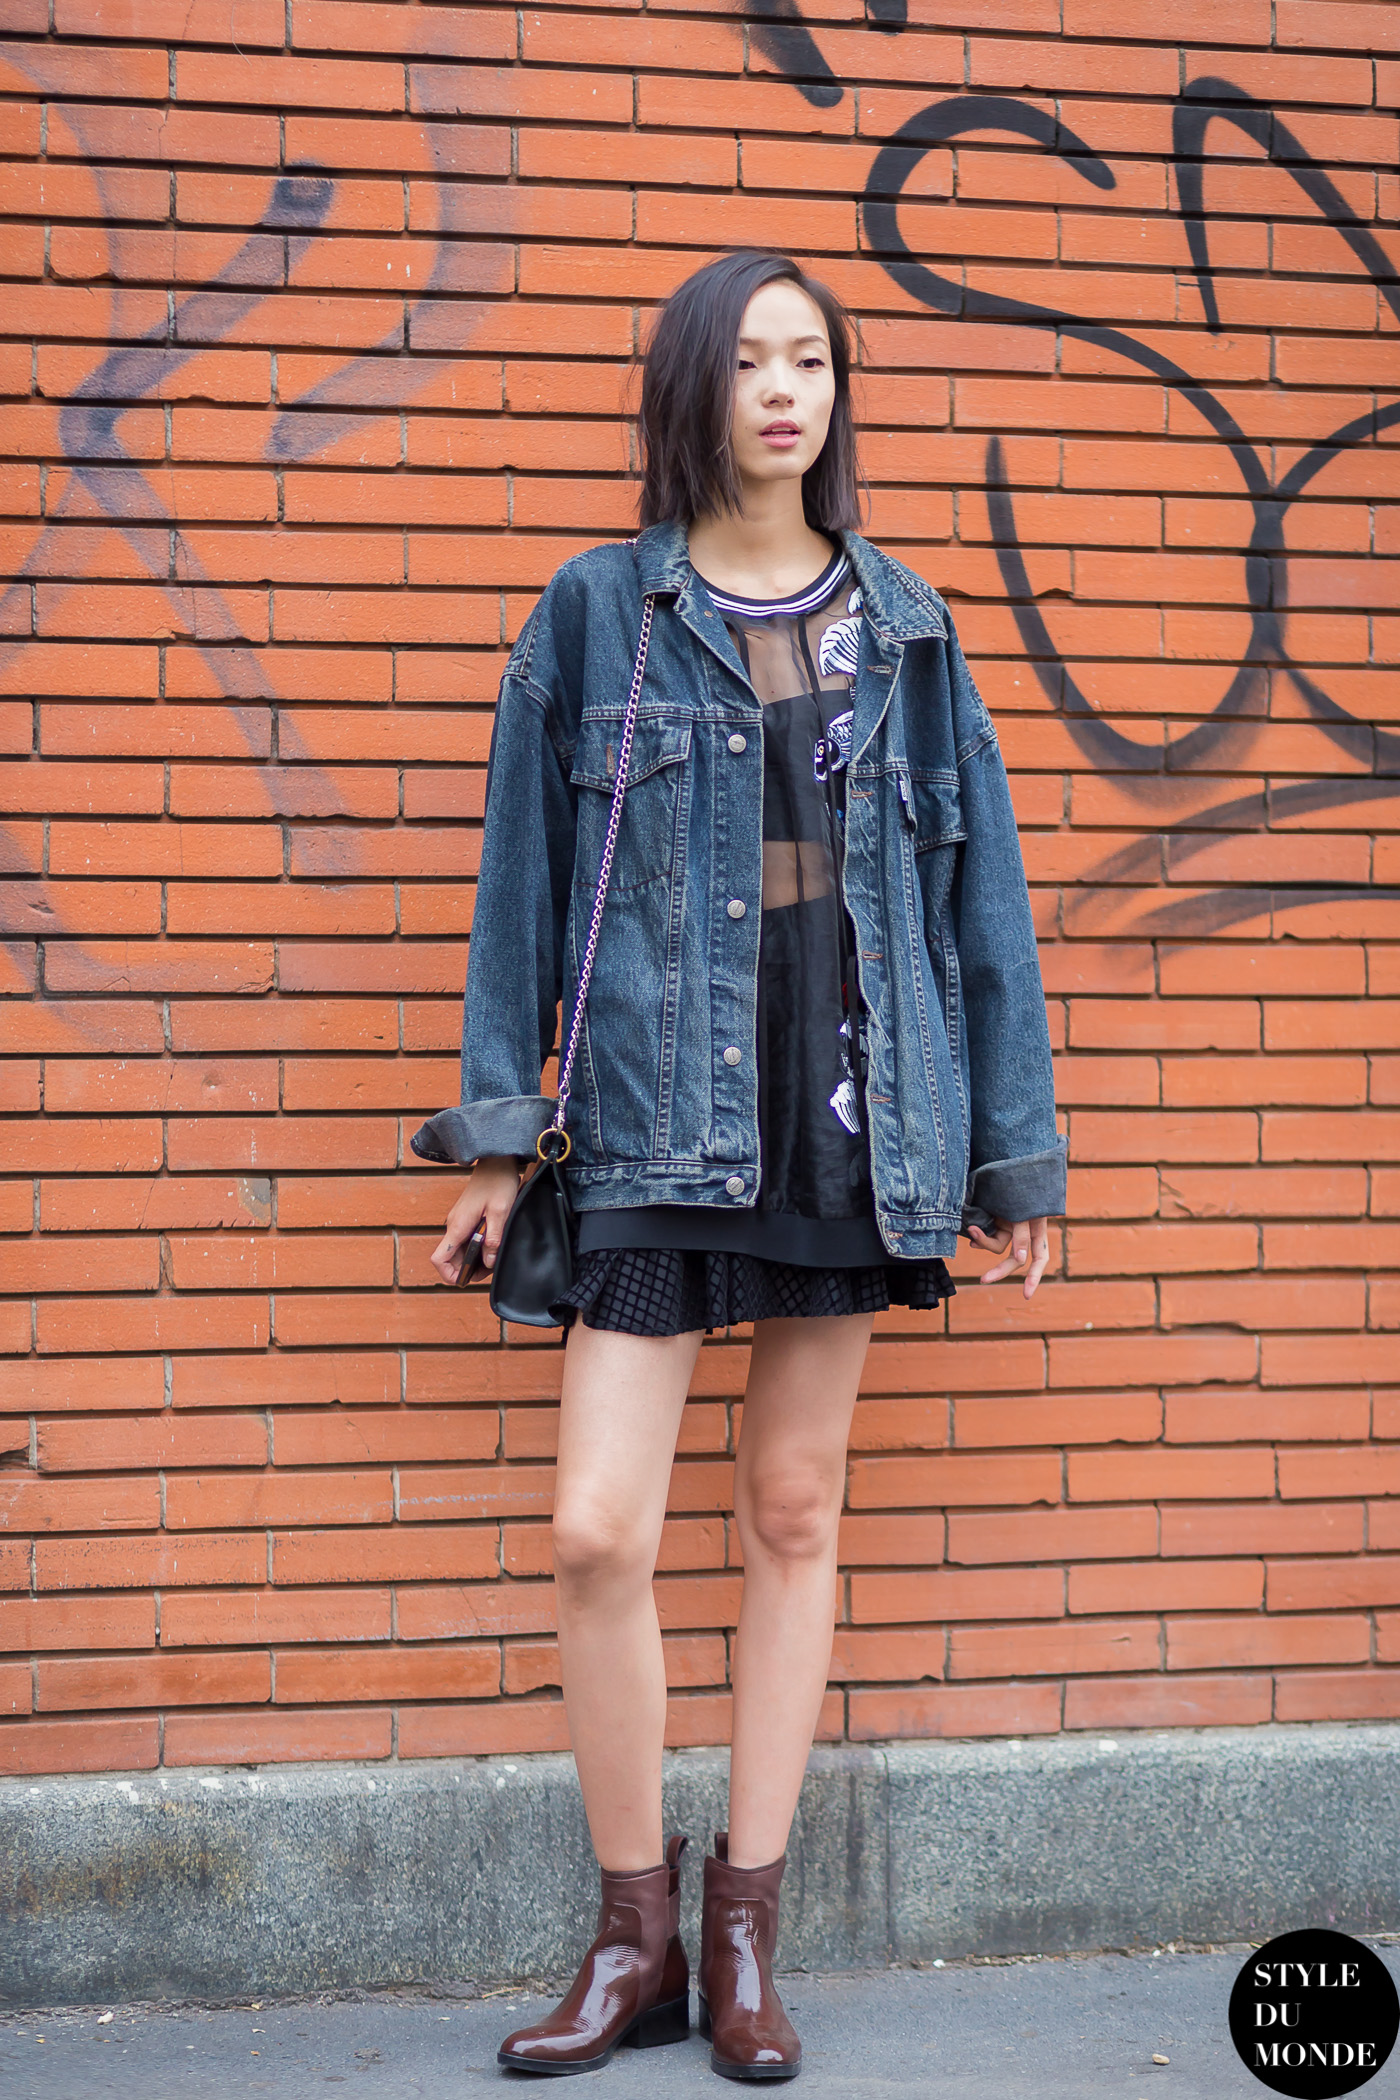 Xiao Wen Ju - STYLE DU MONDE | Street Style Street Fashion Photos